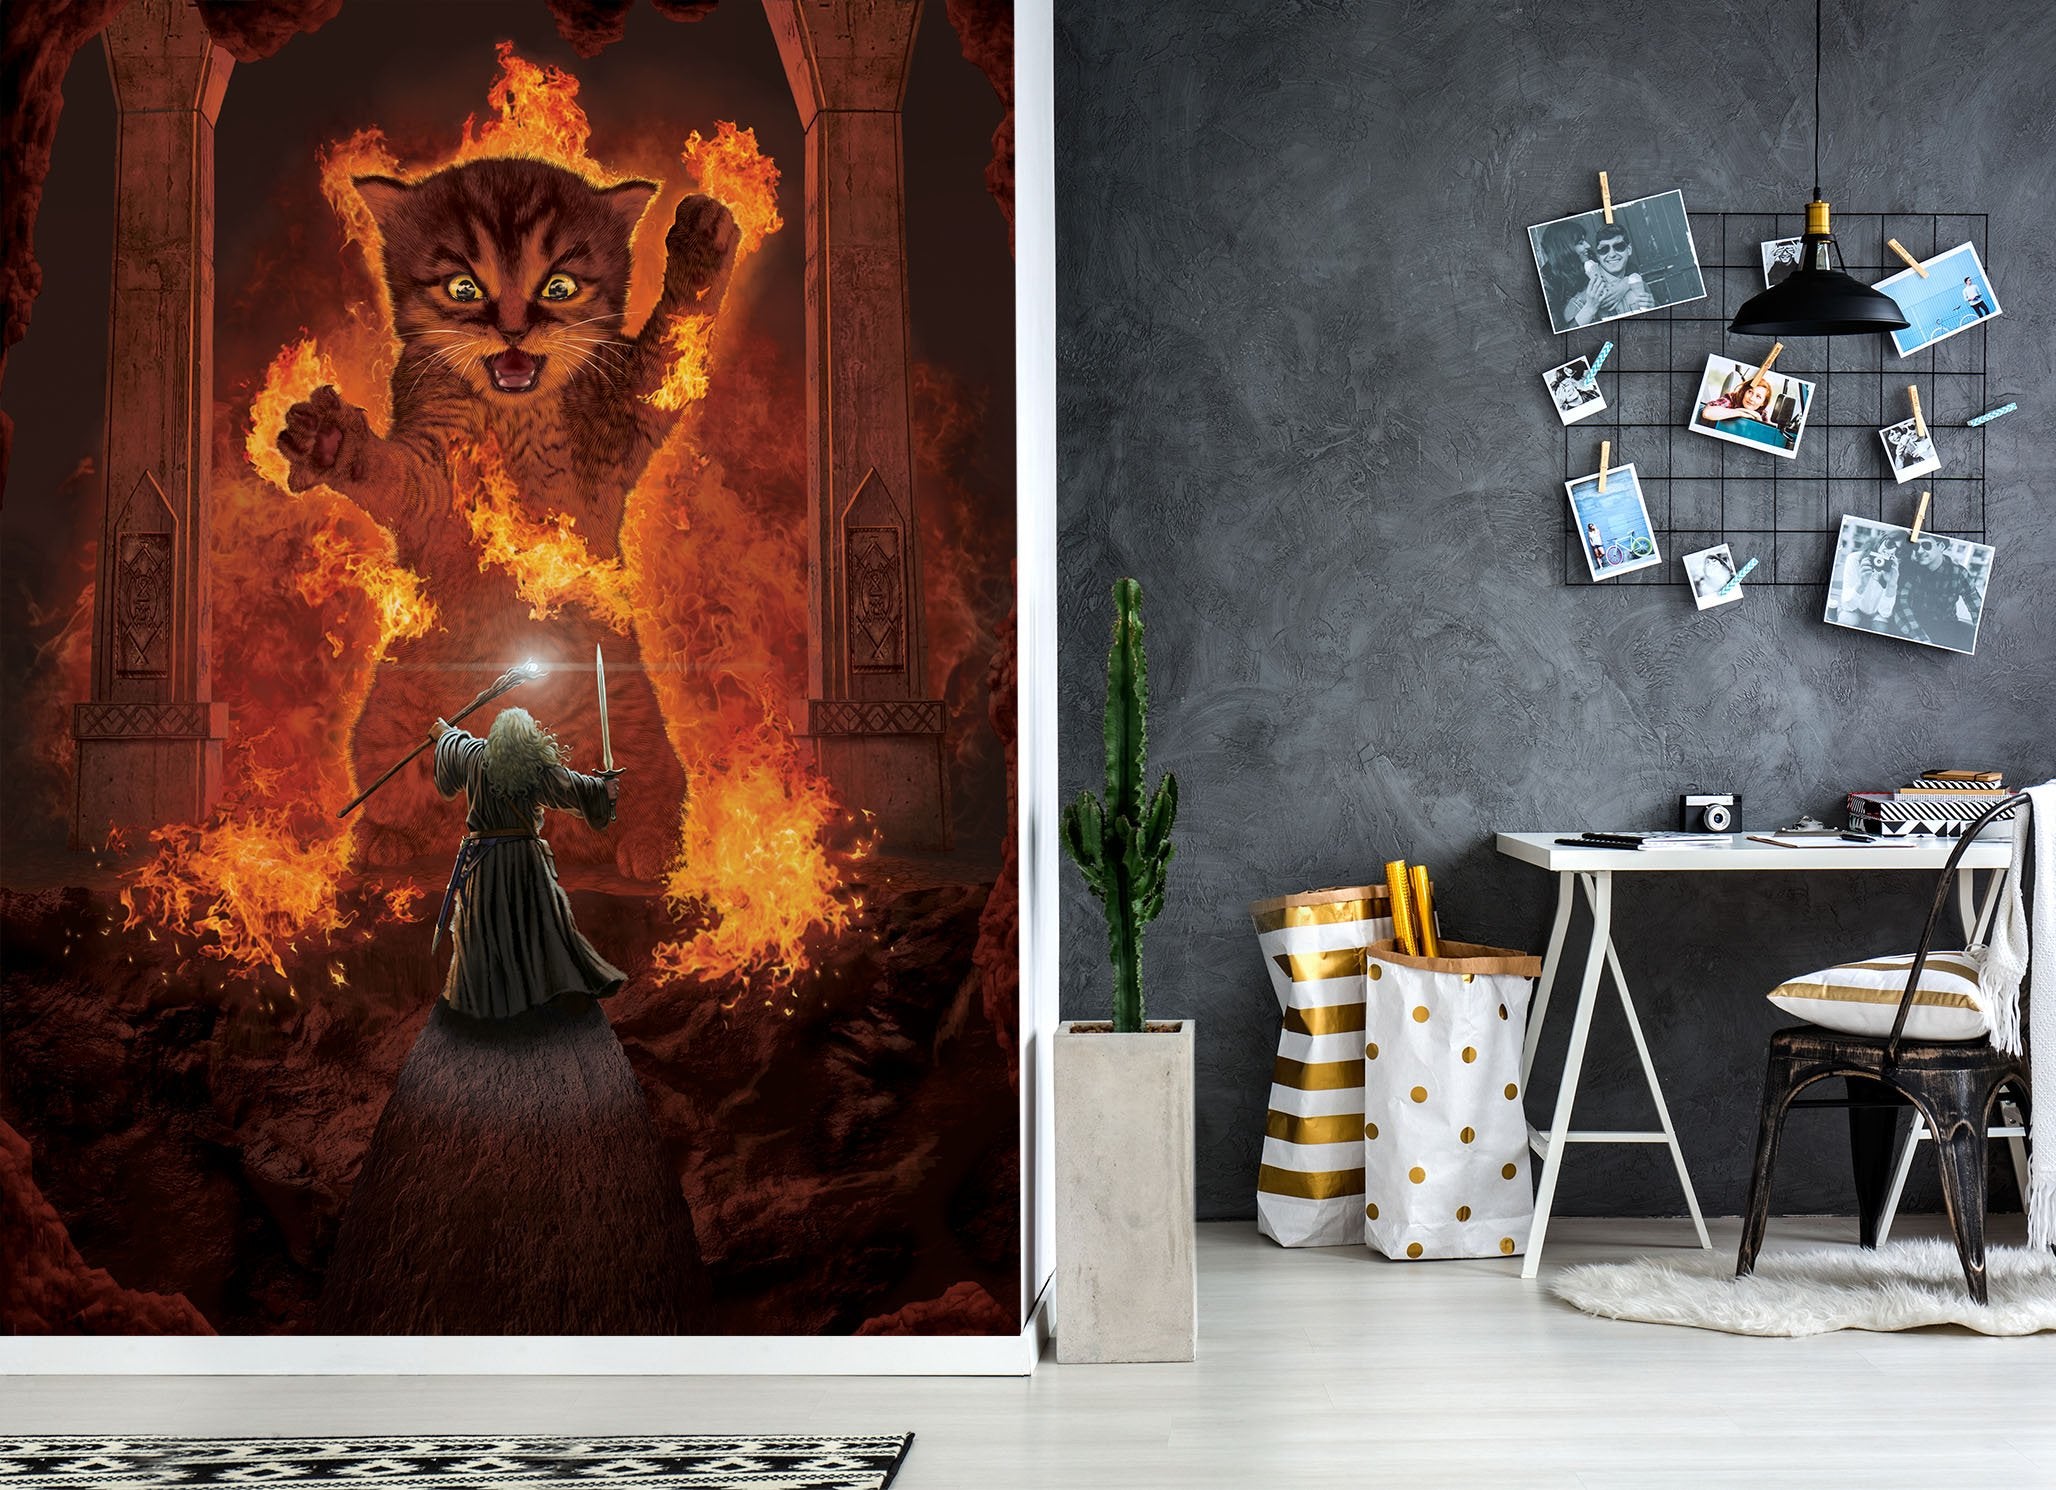 3D Angry Cat 1575 Wall Murals Exclusive Designer Vincent Wallpaper AJ Wallpaper 